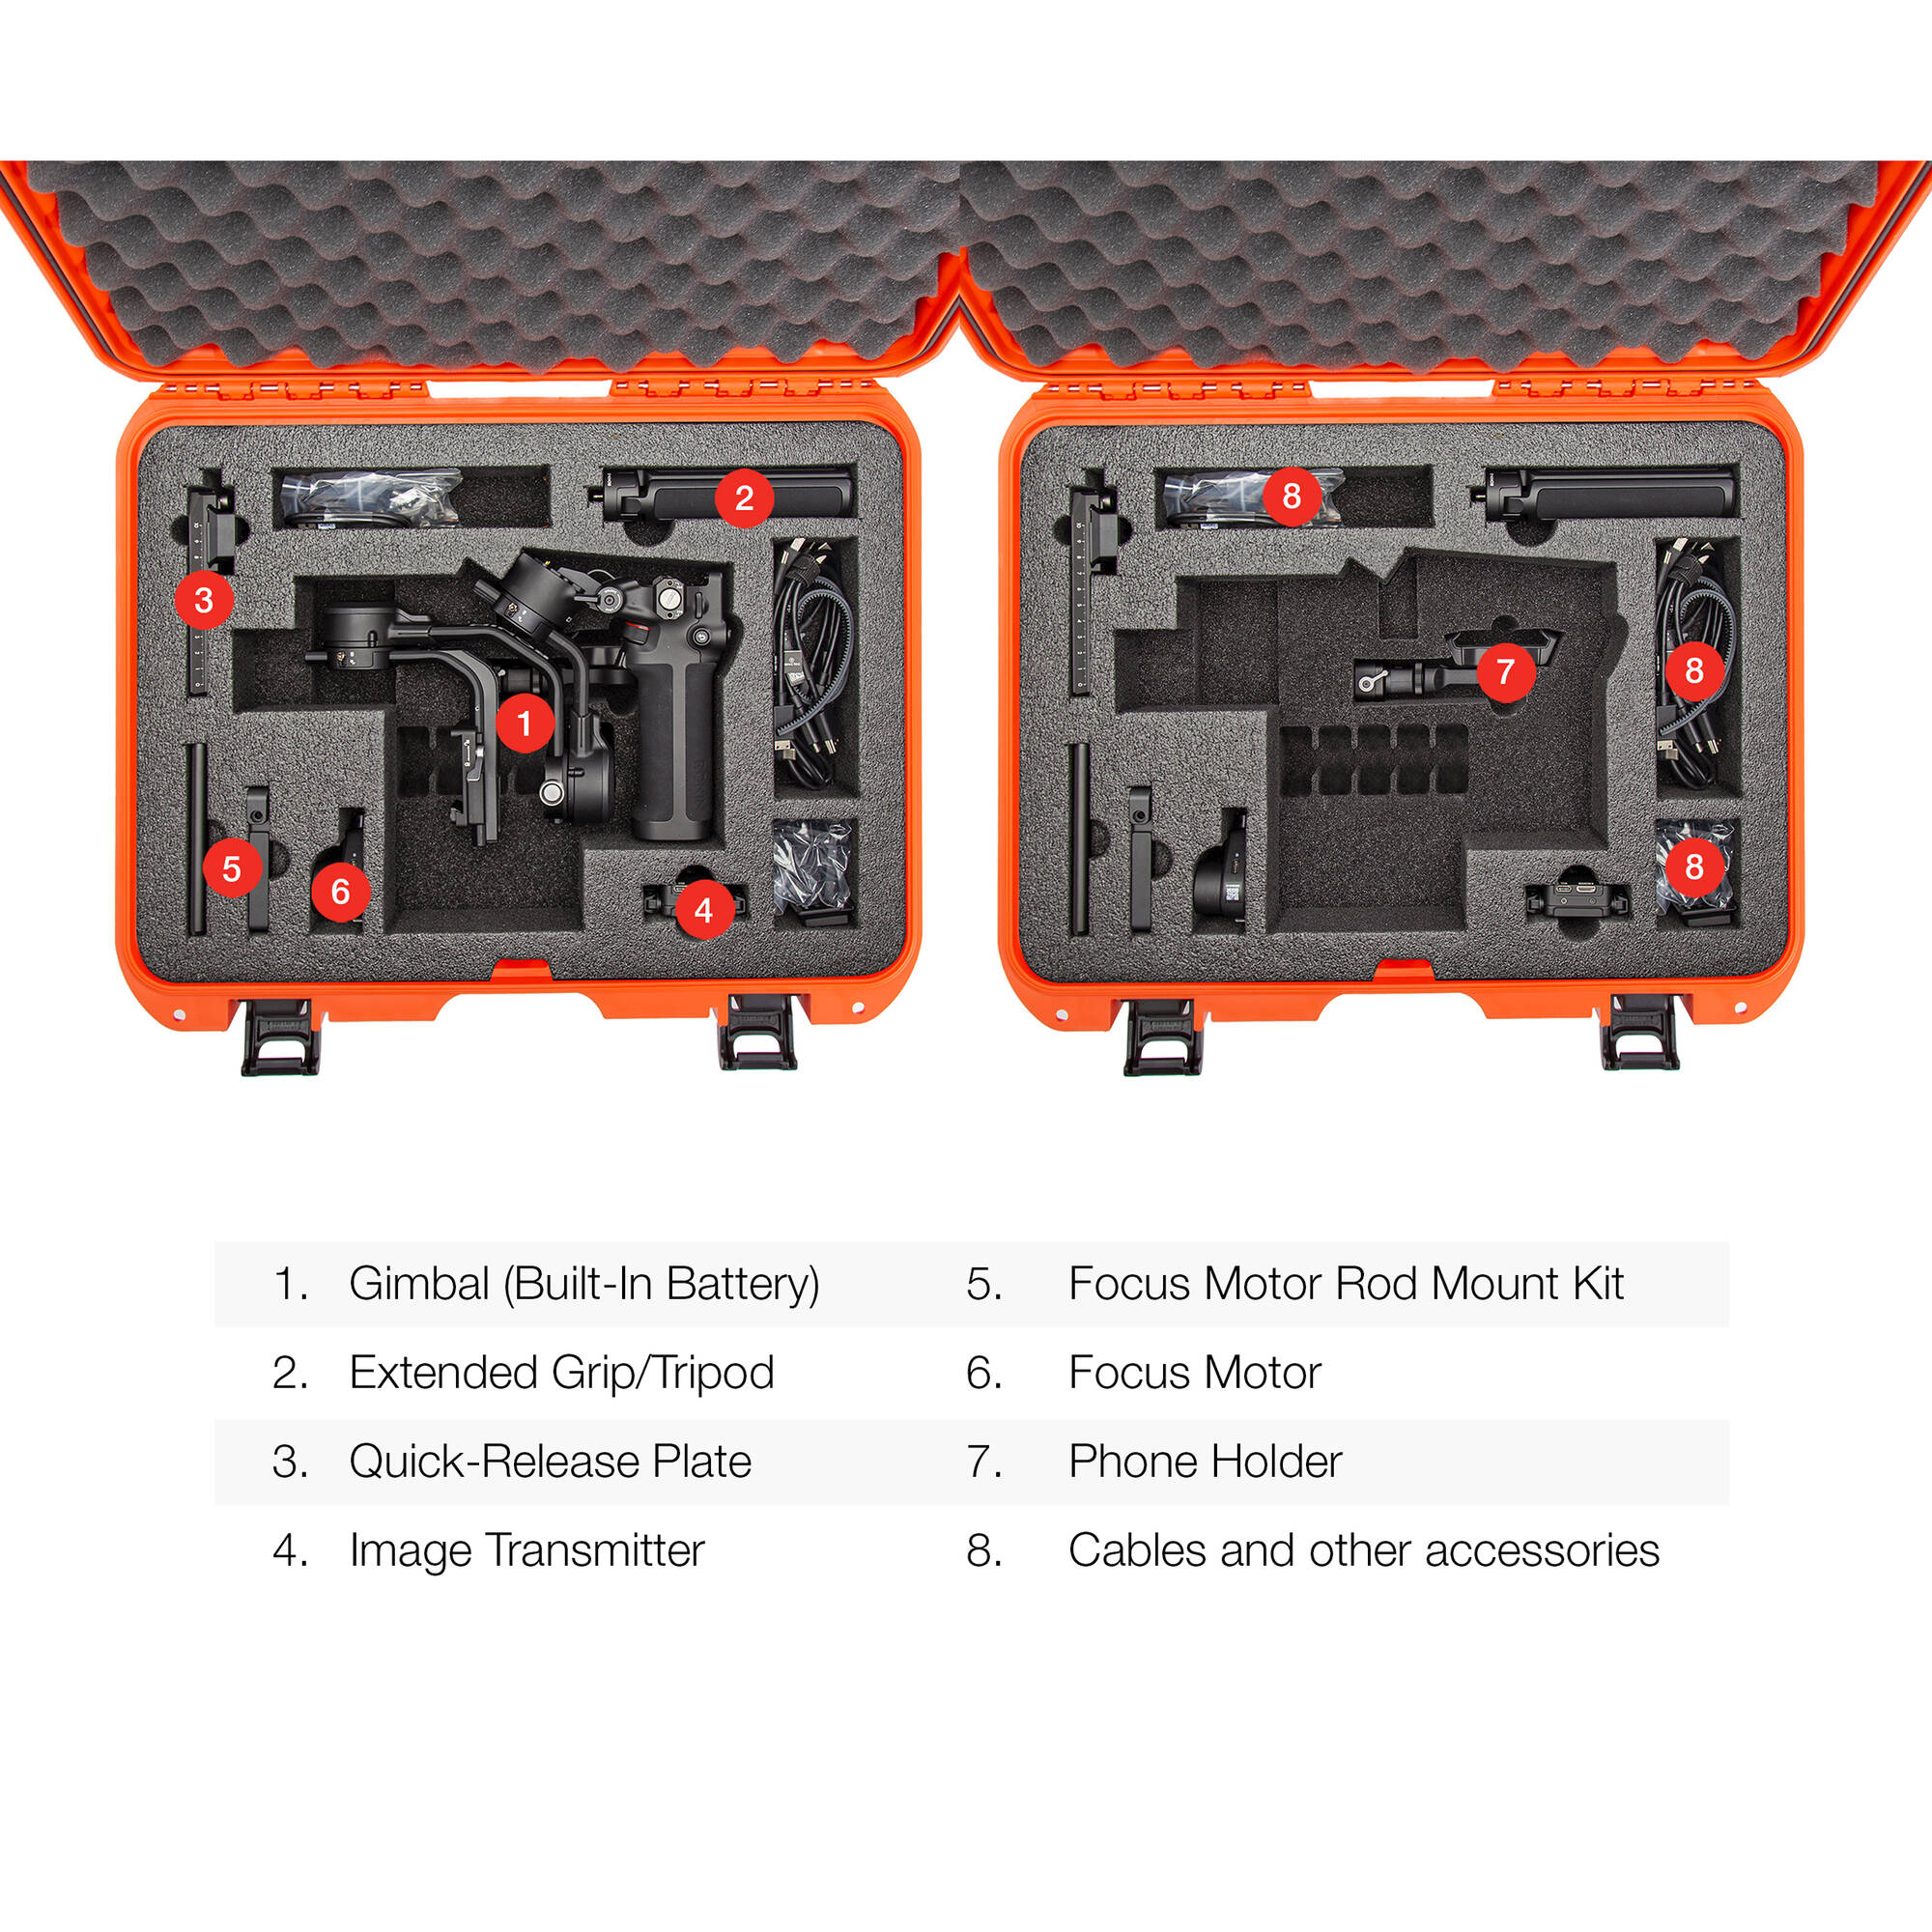 Nanuk 930 Case for DJI RSC 2/RSC 2 Pro Combo (Orange)